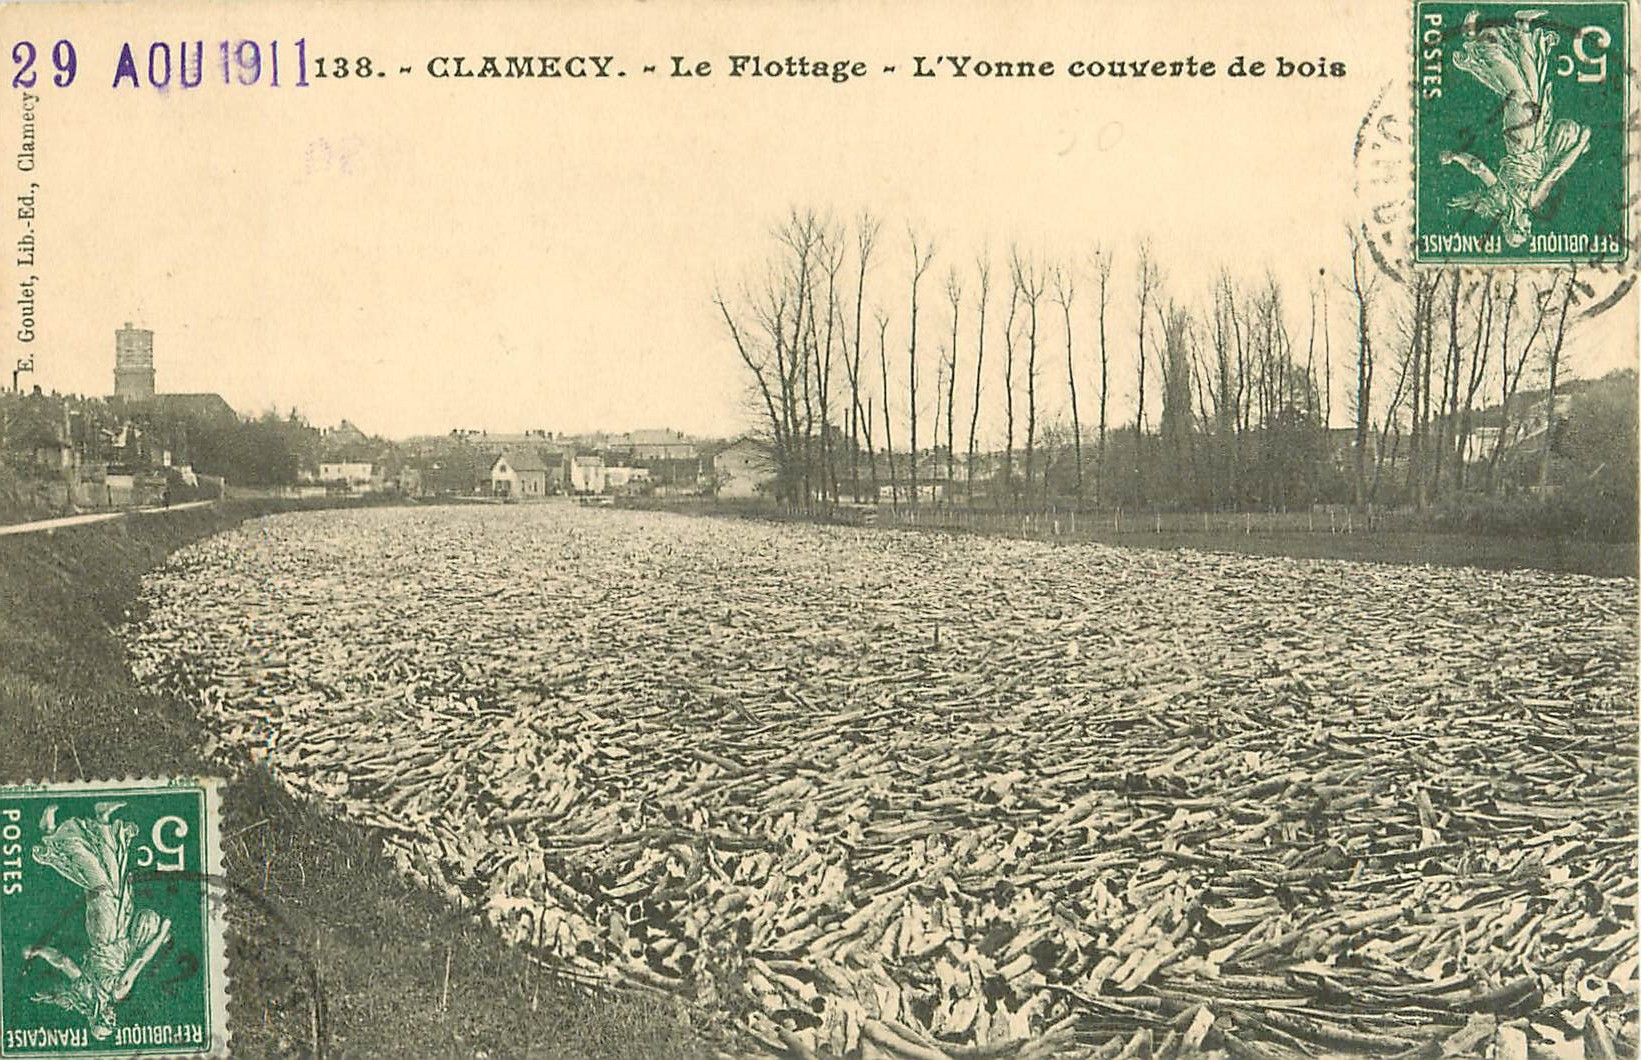 WW 58 CLAMECY. Le Flottage avec l'Yonne couverte de bois en 1911